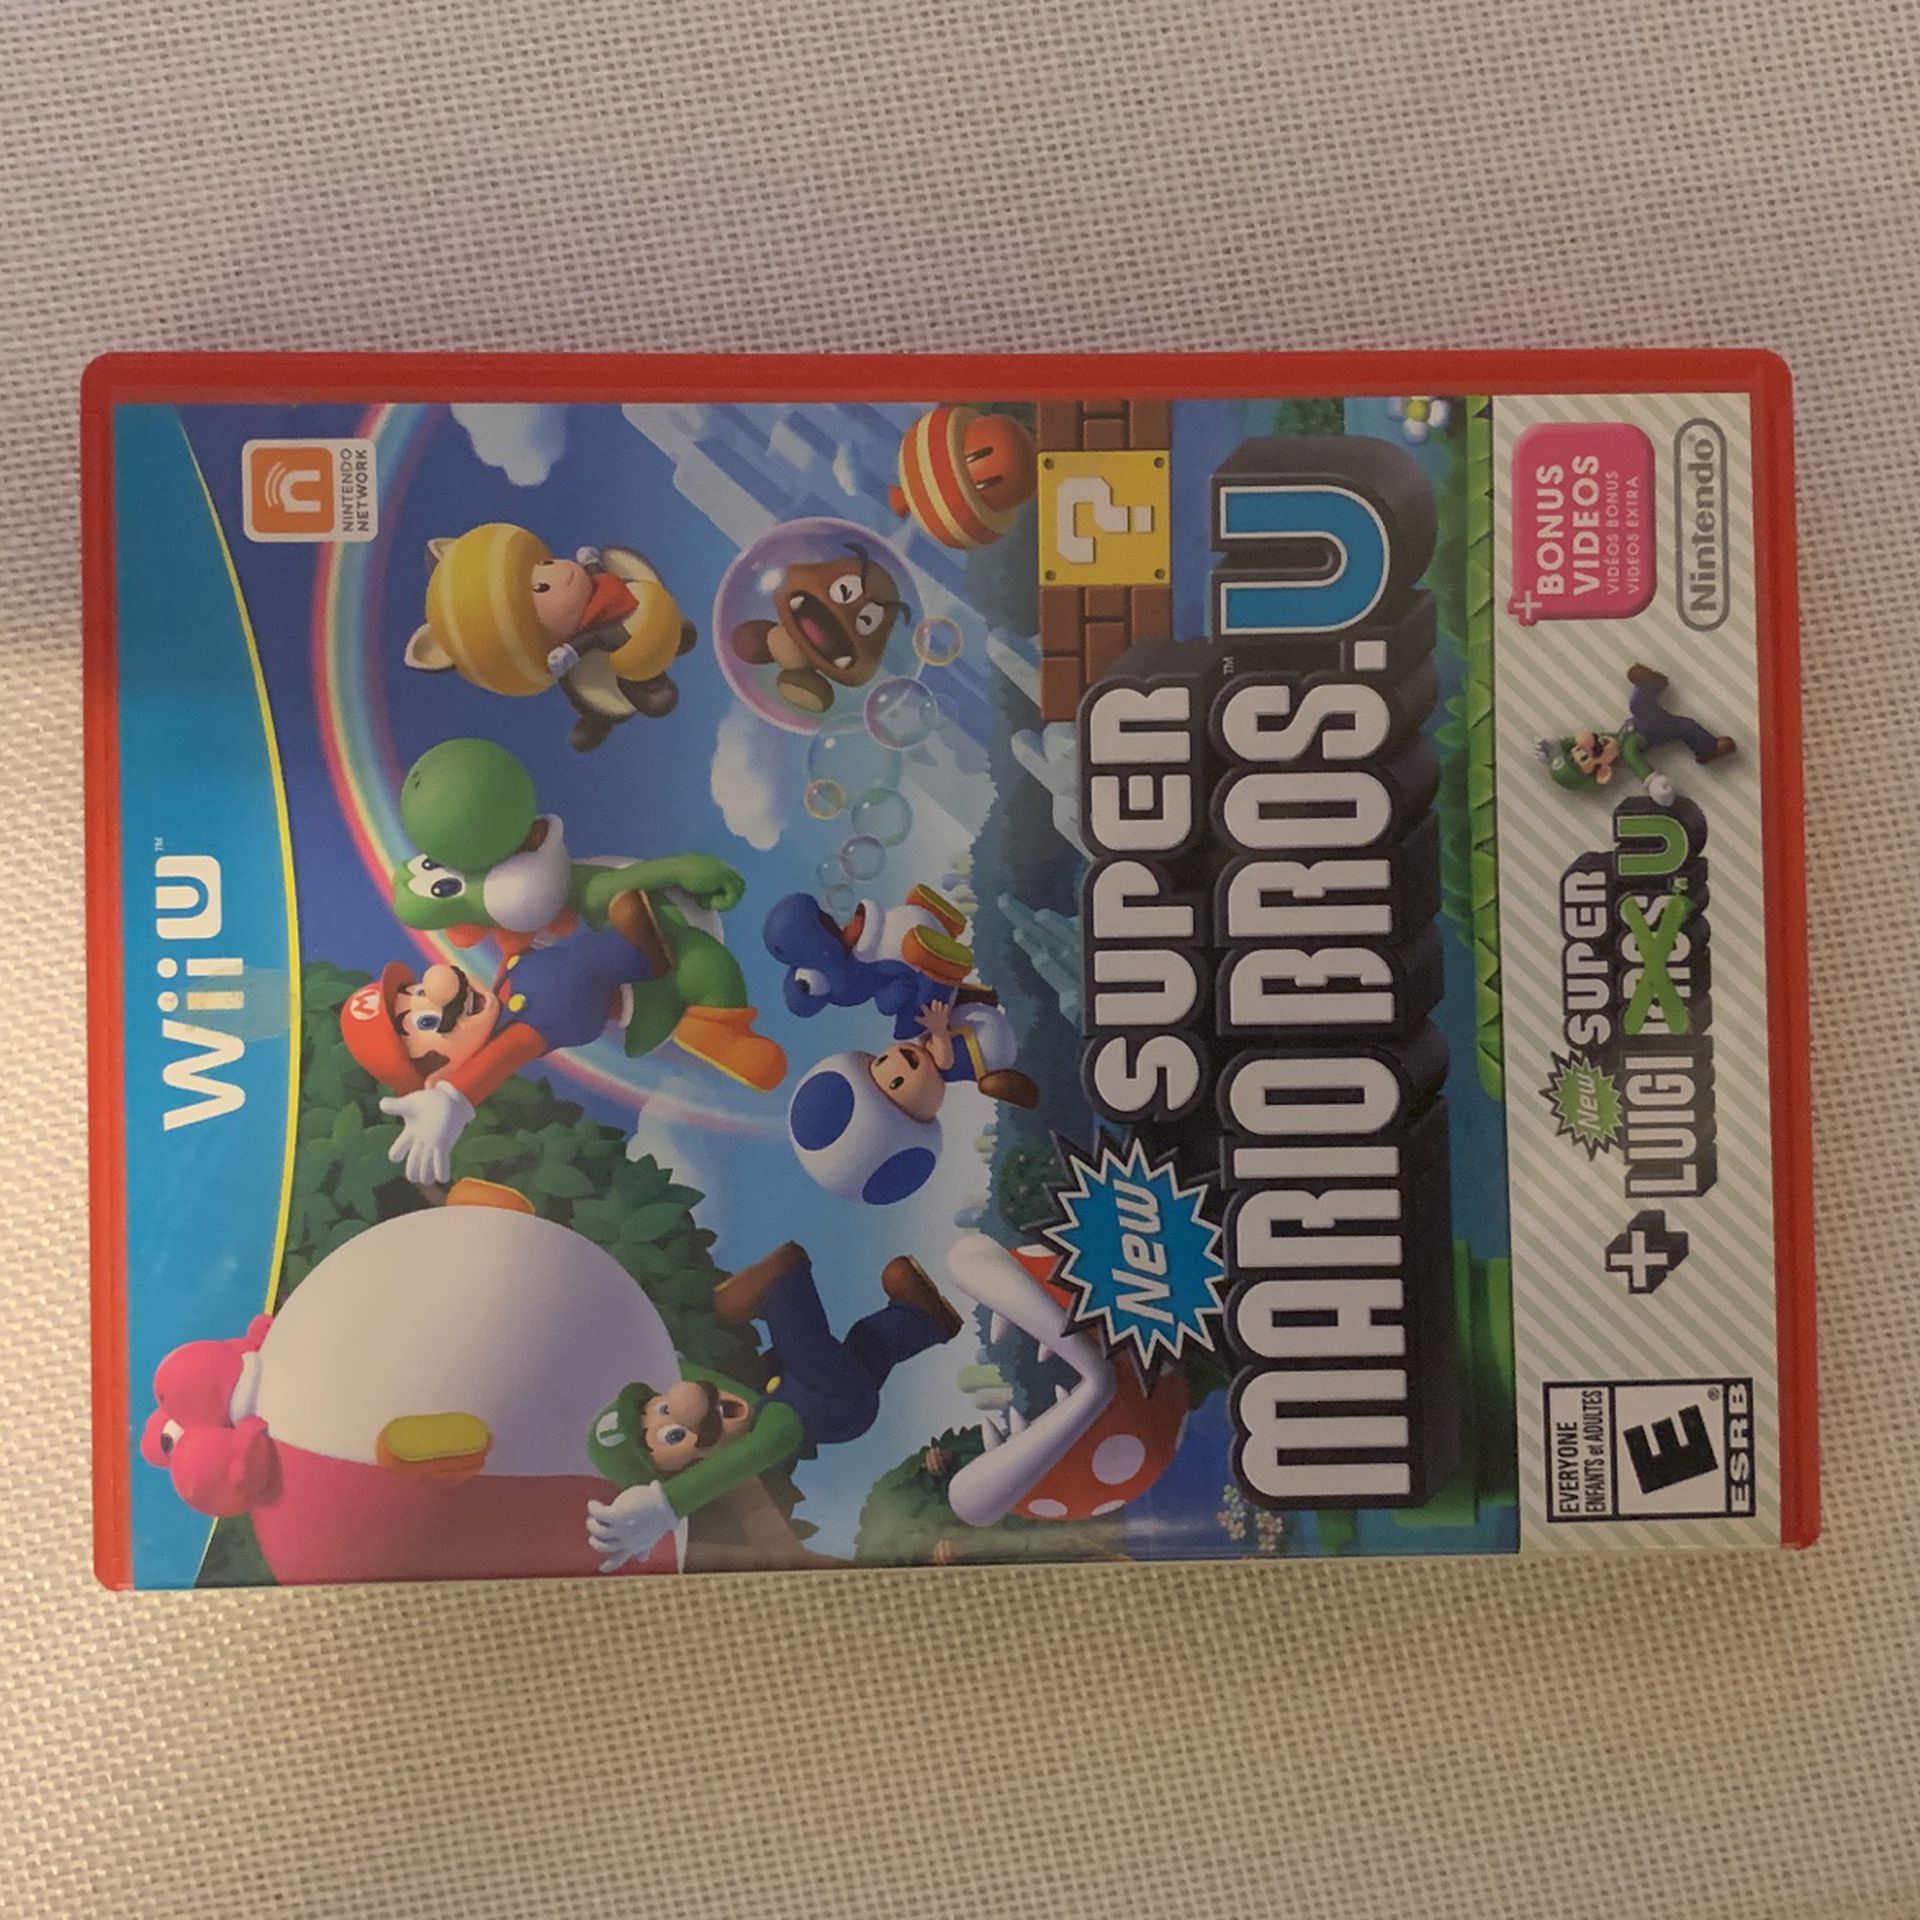 Nintendo Wii U New Super Mario + New Super Mario Luigi 